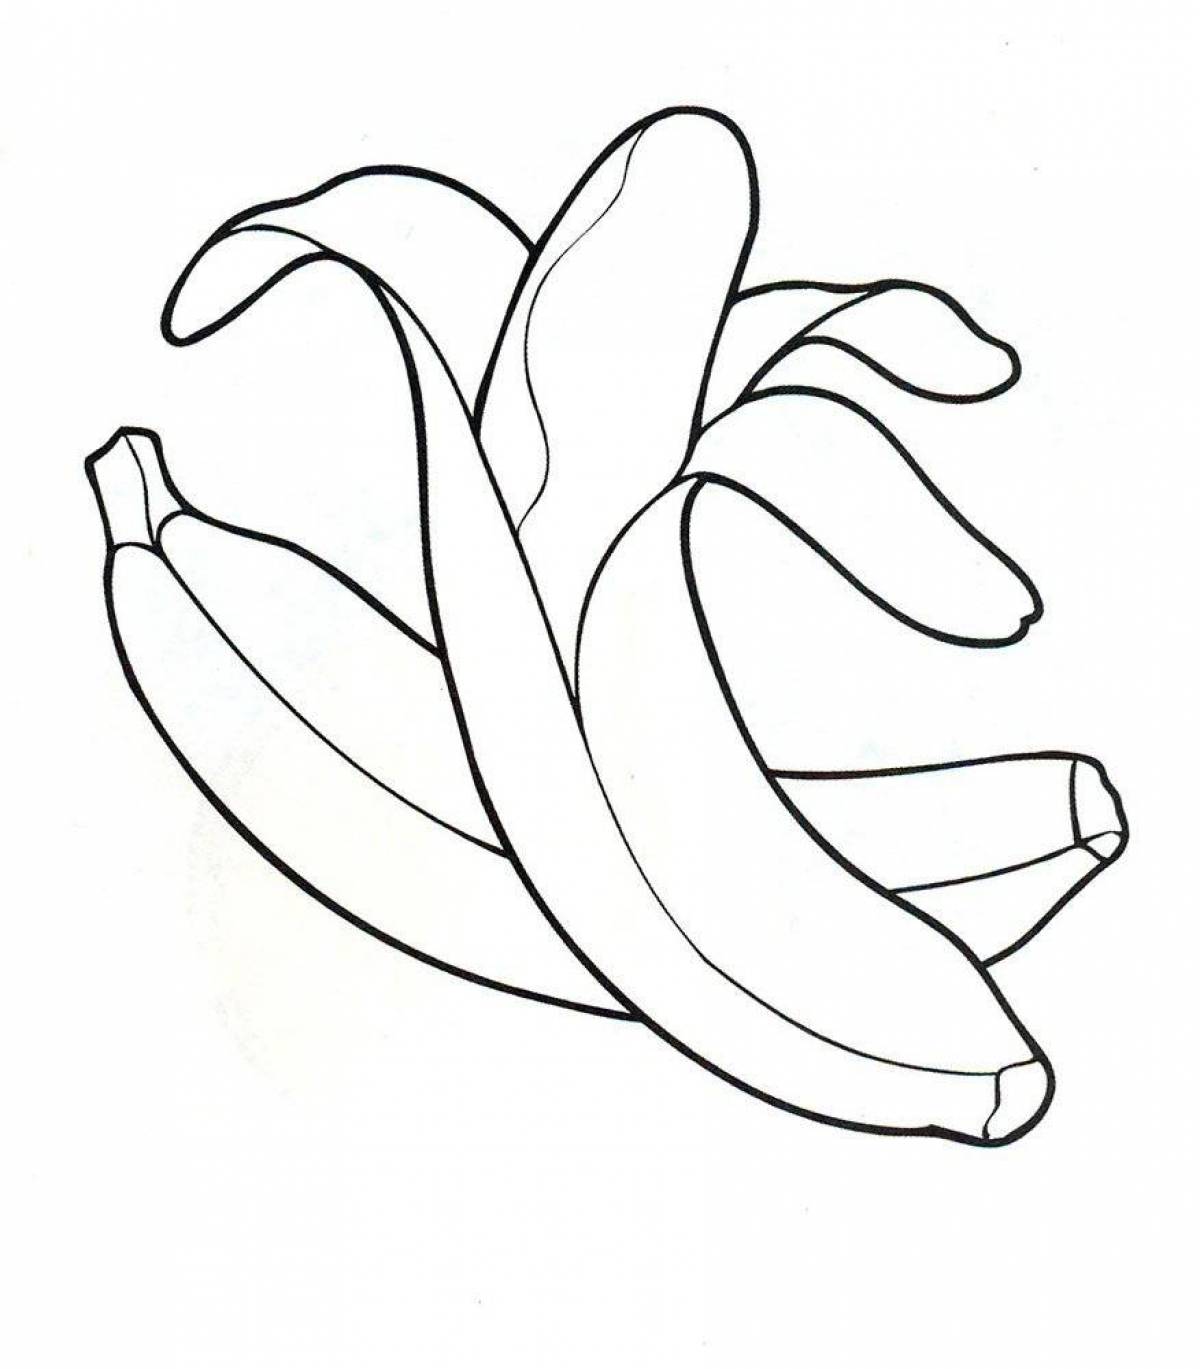 Веселая раскраска бананов для детей